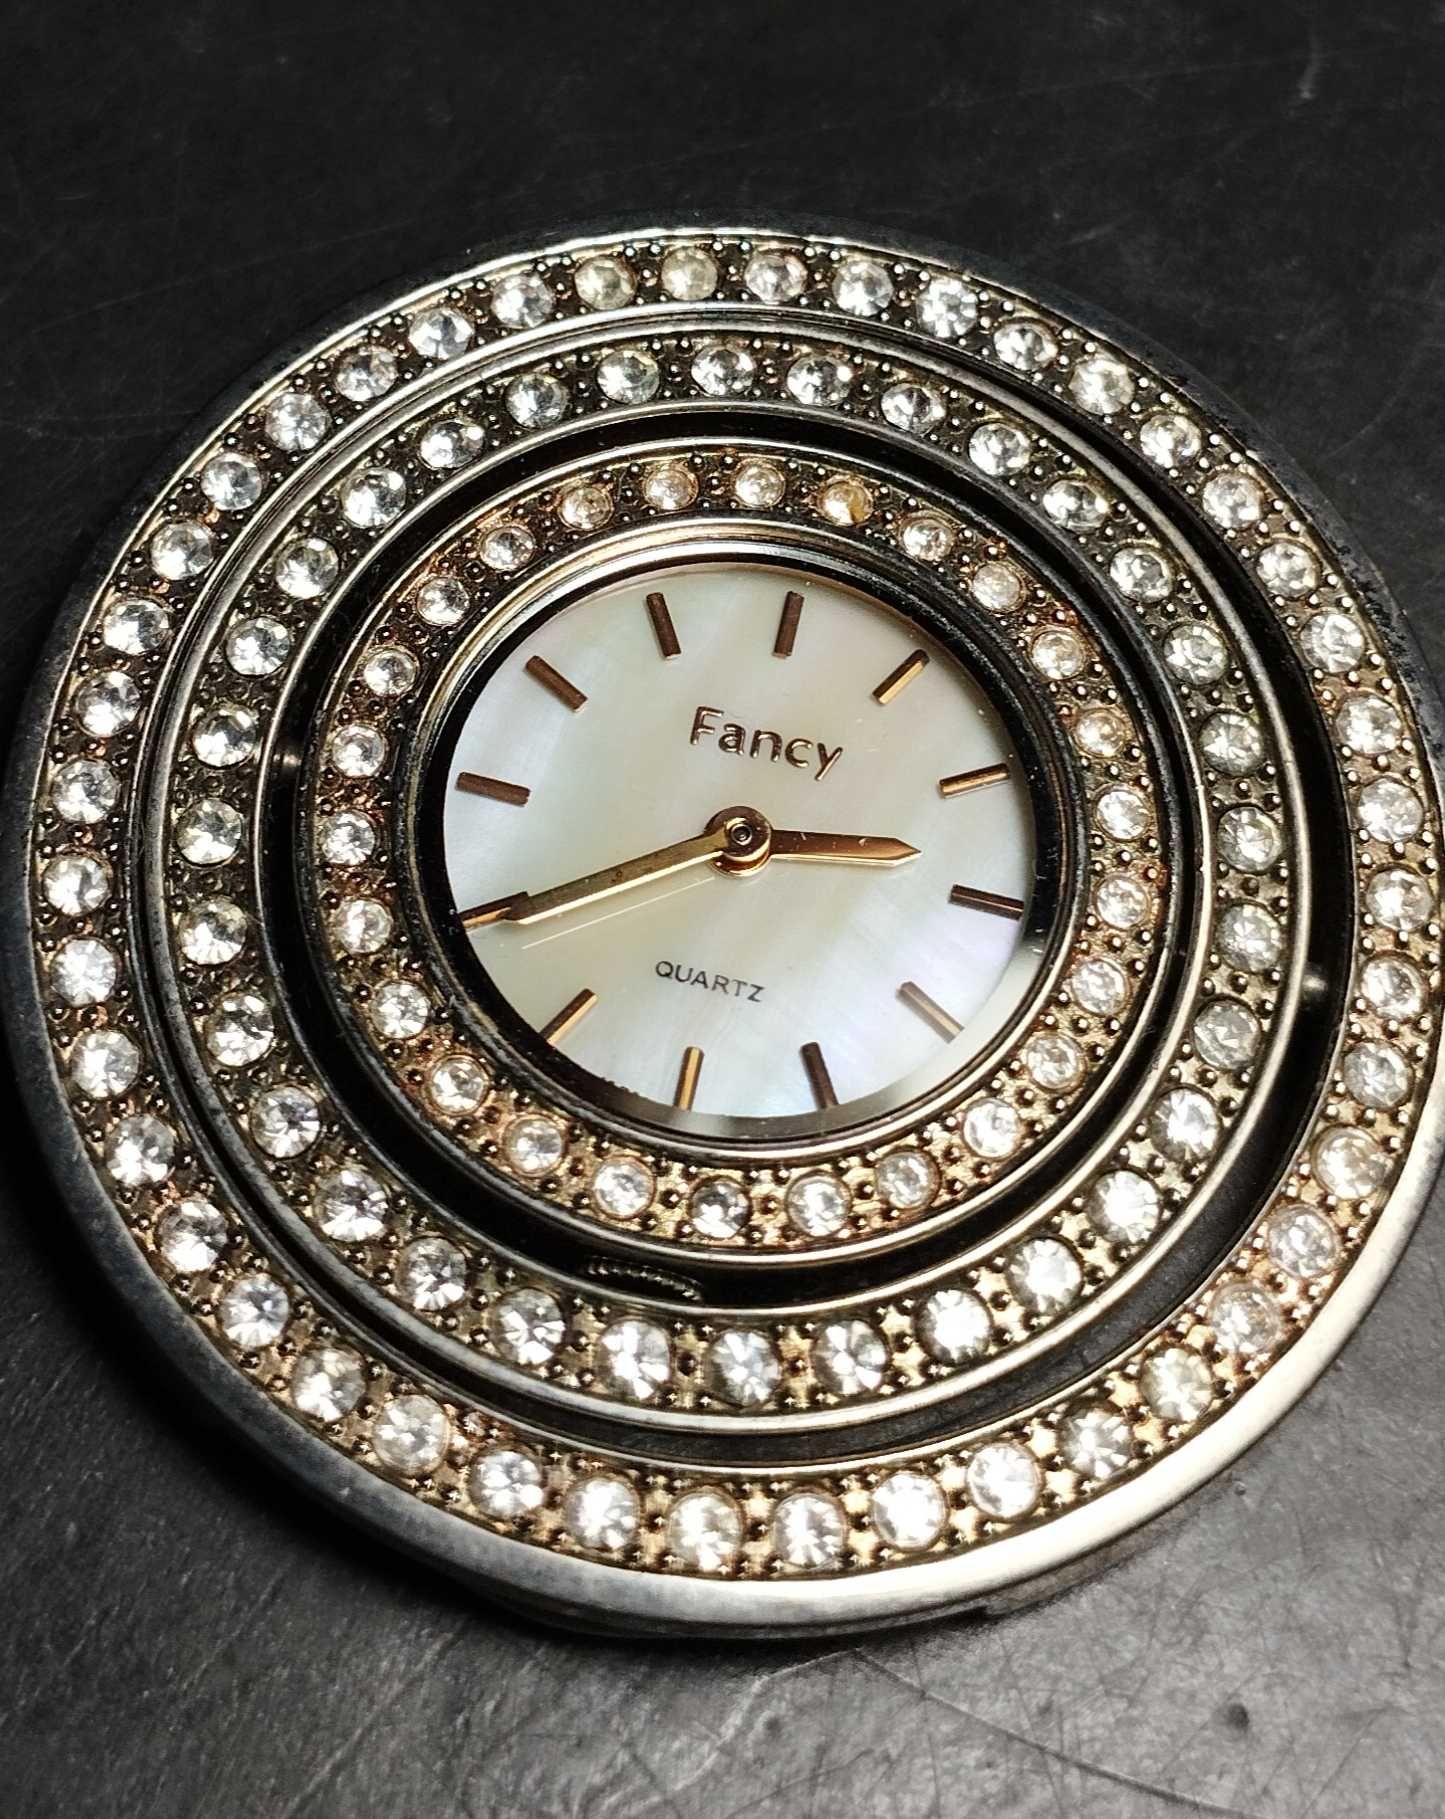 Женские наручные часы Bvlgari  Fancy, ювелирные, водостойкие.